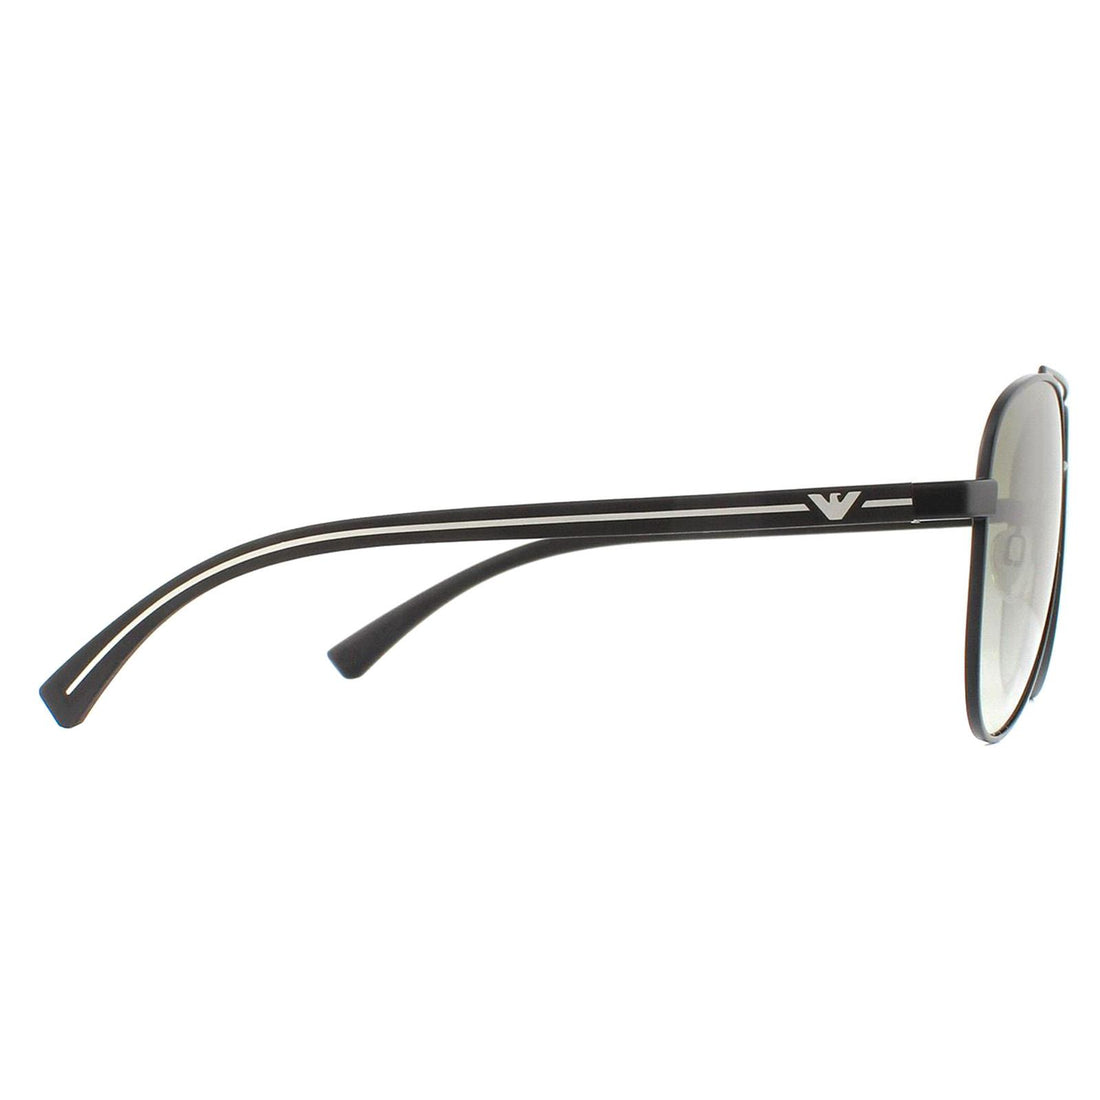 Emporio Armani Sunglasses EA2079 30018E Matte Black Green Gradient